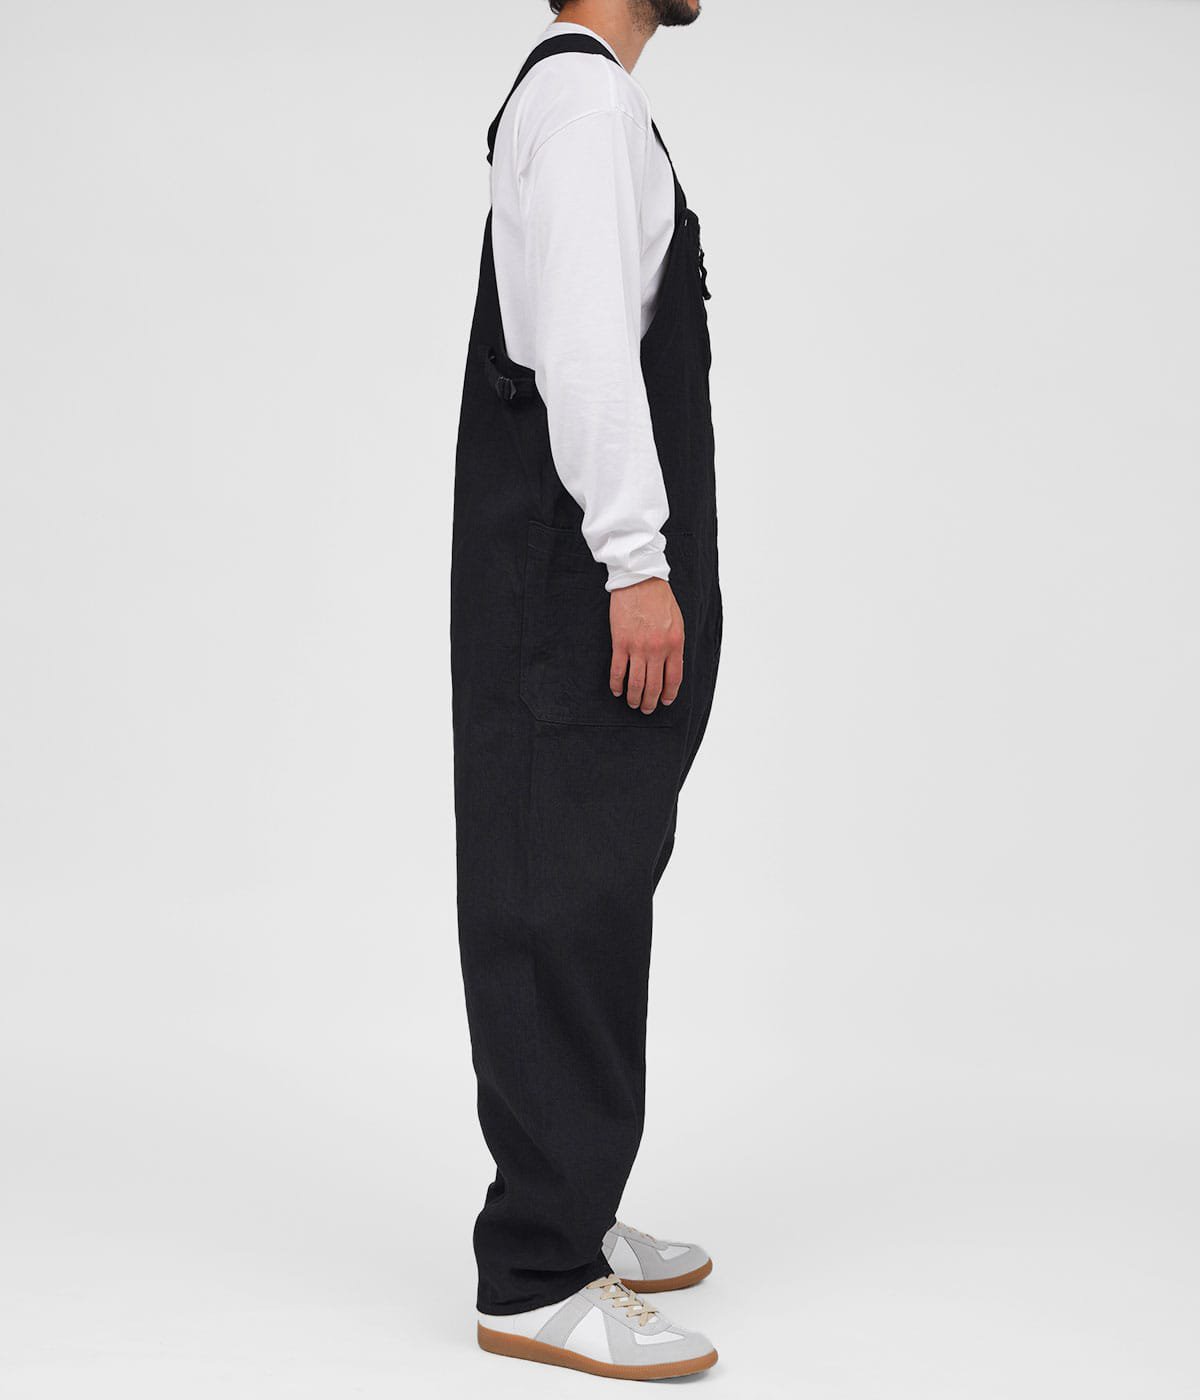 KAPTAIN SUNSHINE(キャプテンサンシャイン) Deck Trousers / パンツ 